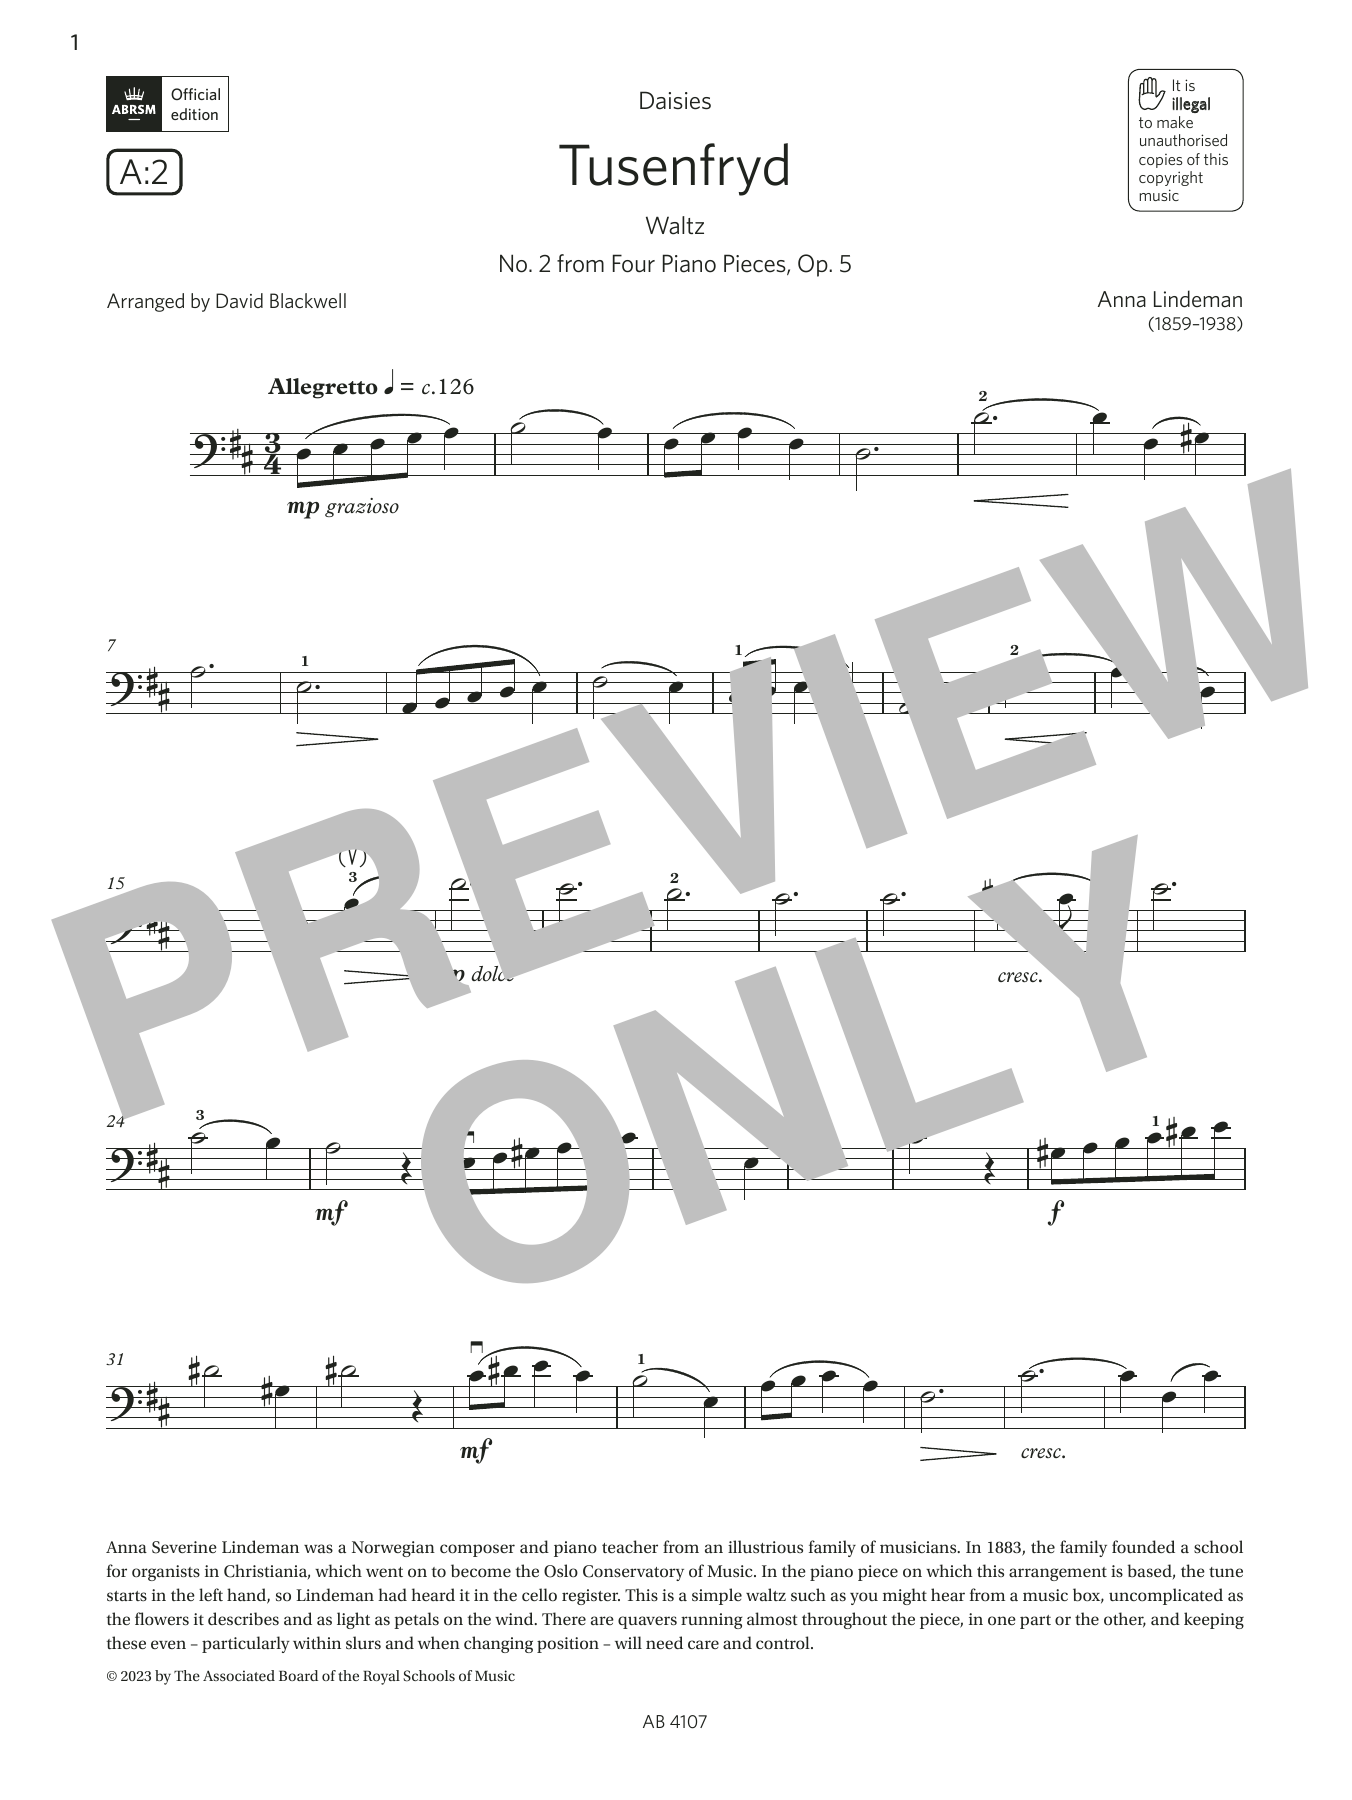 Download Anna Lindeman Tusenfryd (Grade 4, A2, from the ABRSM Sheet Music